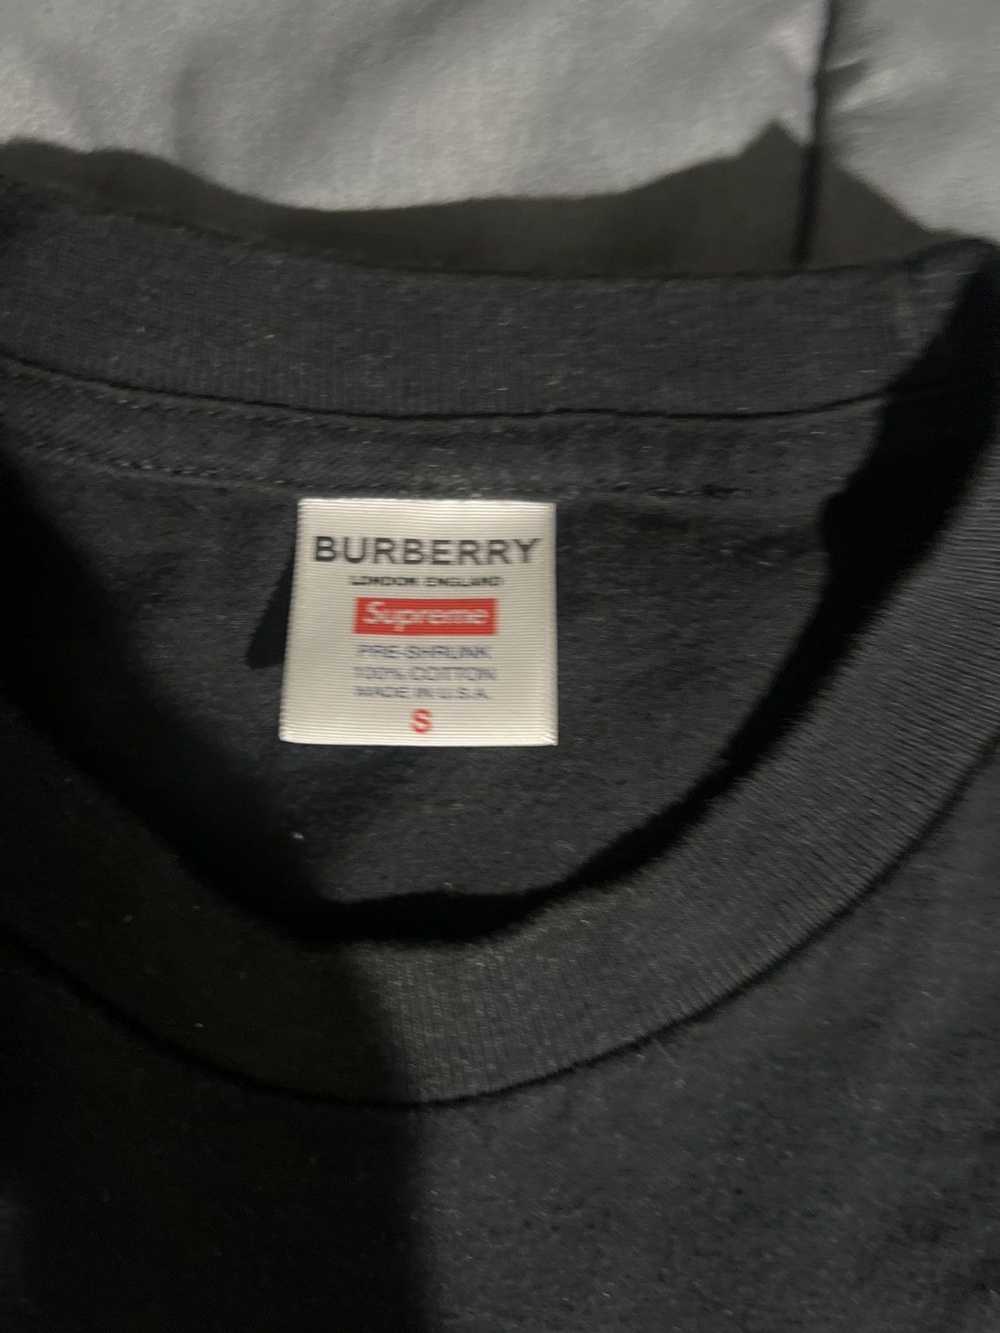 Burberry × Supreme Supreme Burberry Box Logo Tee - image 5